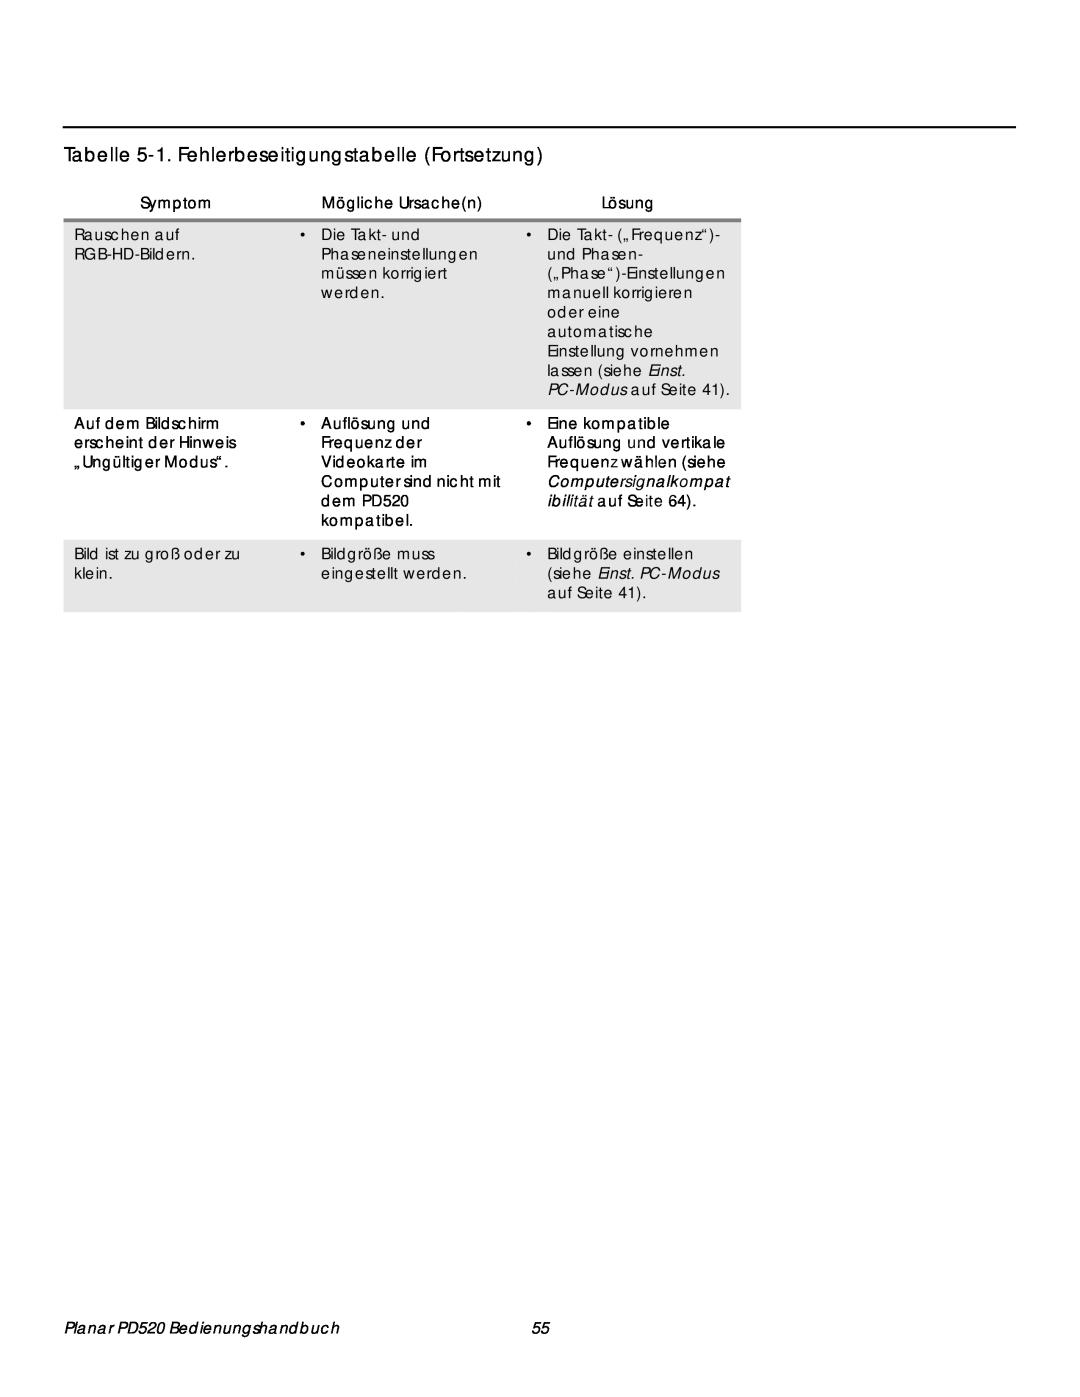 Planar PD520 Tabelle 5-1.Fehlerbeseitigungstabelle Fortsetzung, Symptom, Mögliche Ursachen, Lösung, Computersignalkompat 